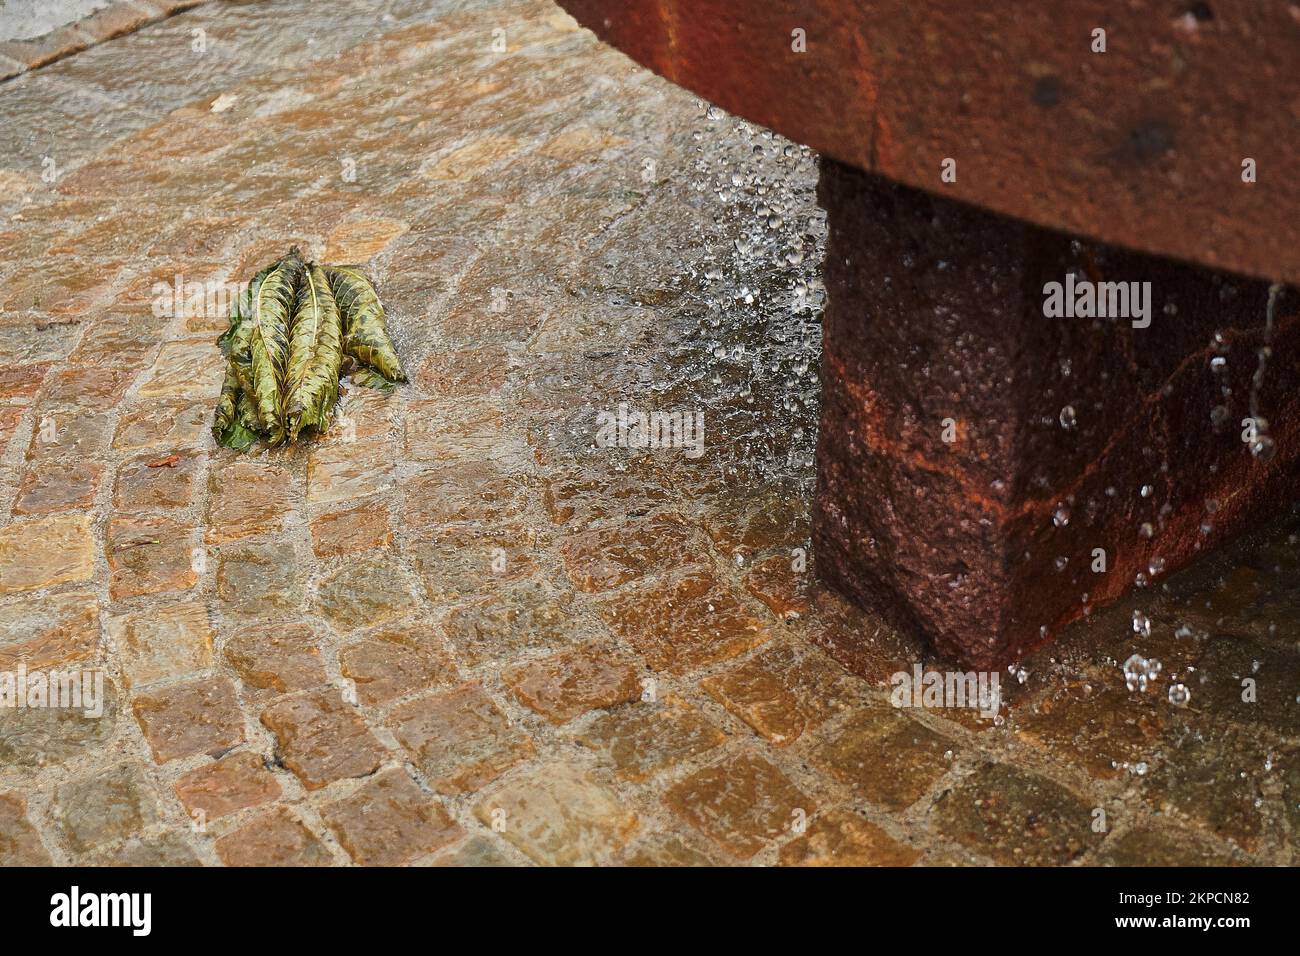 Ein wunderschöner Schuss grüner Blätter, die im Brunnenboden liegen und mit Wasser bedeckt sind Stockfoto